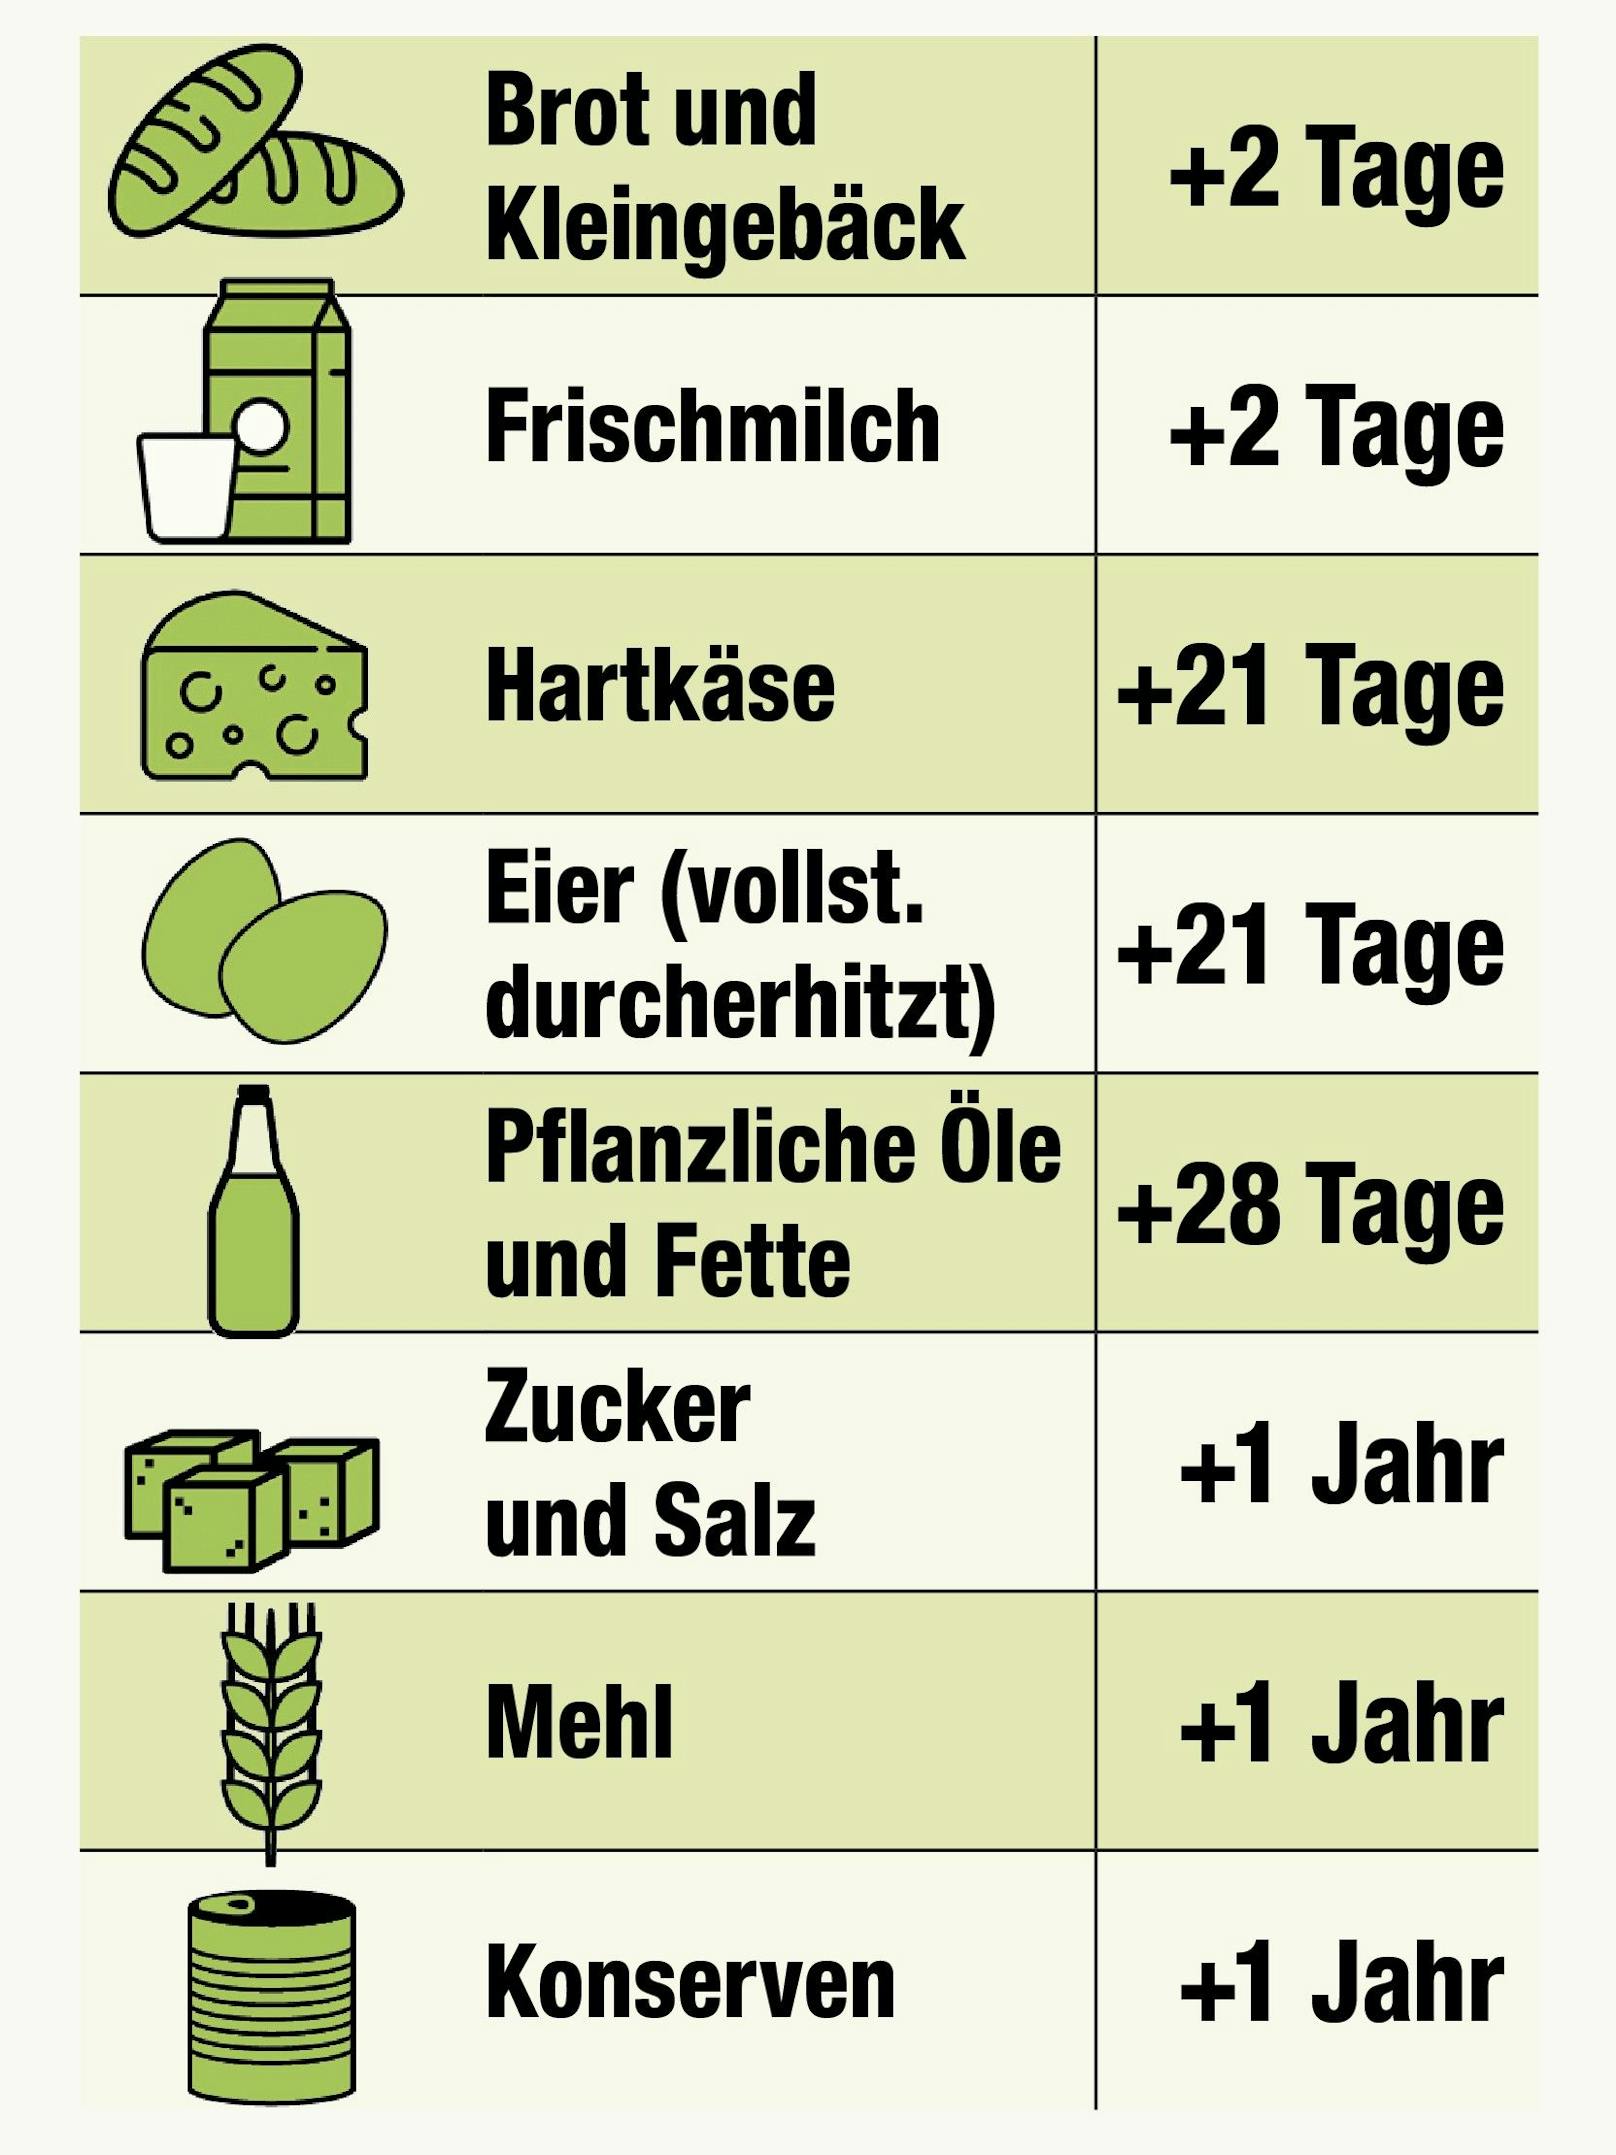 Ein Grund für Lebensmittelverschwendung ist die falsche Interpretation des Mindesthaltbarkeitsdatums.&nbsp;Österreichische Haushalte verlieren im Schnitt 800 Euro im Jahr, die sie für Lebensmittel ausgeben, aber nicht konsumieren. <br>